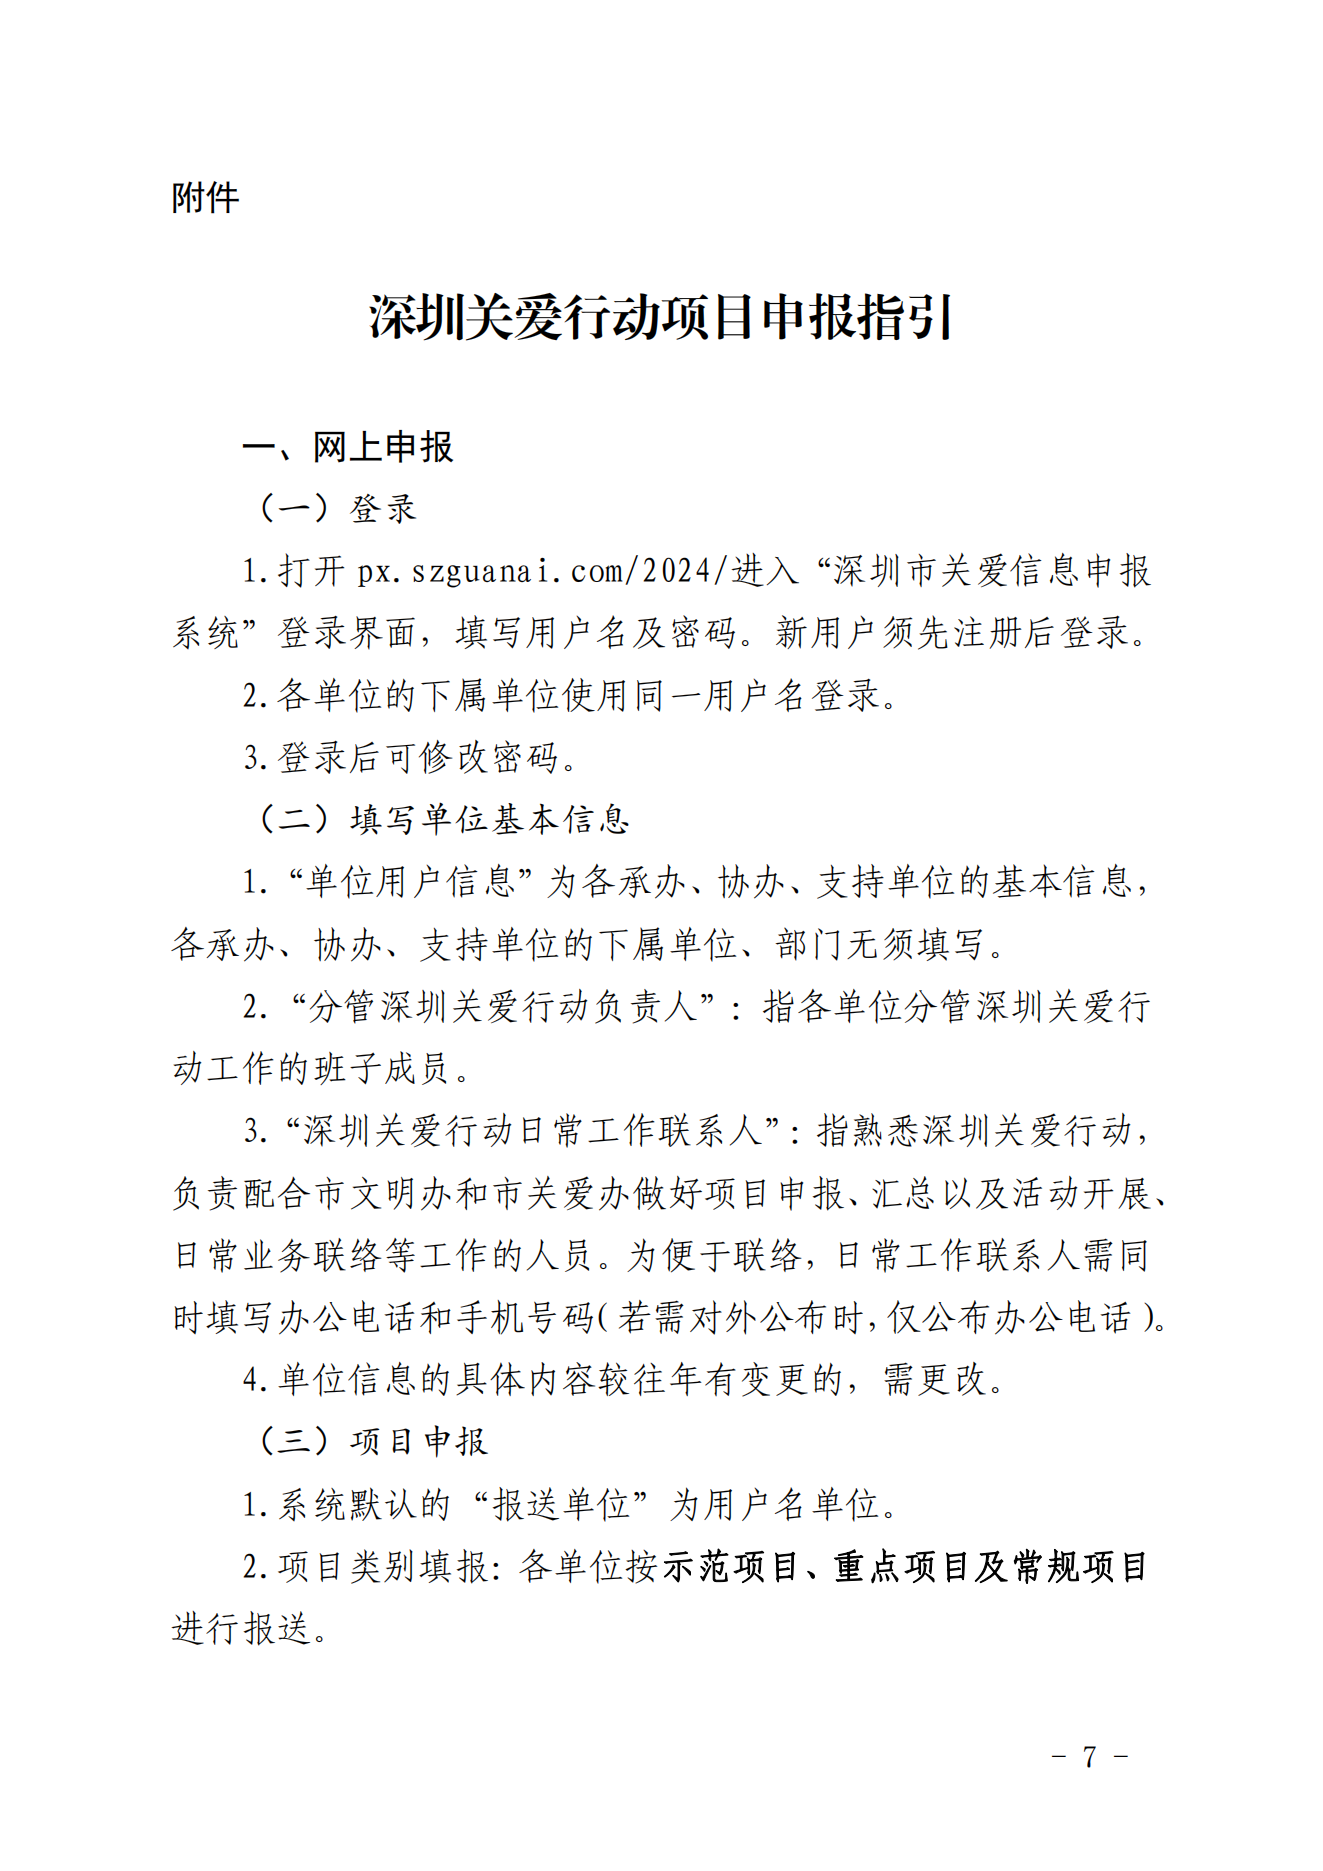 【定稿】关于做好第二十一届深圳关爱行动组织策划和项目申报工作的通知_06.png